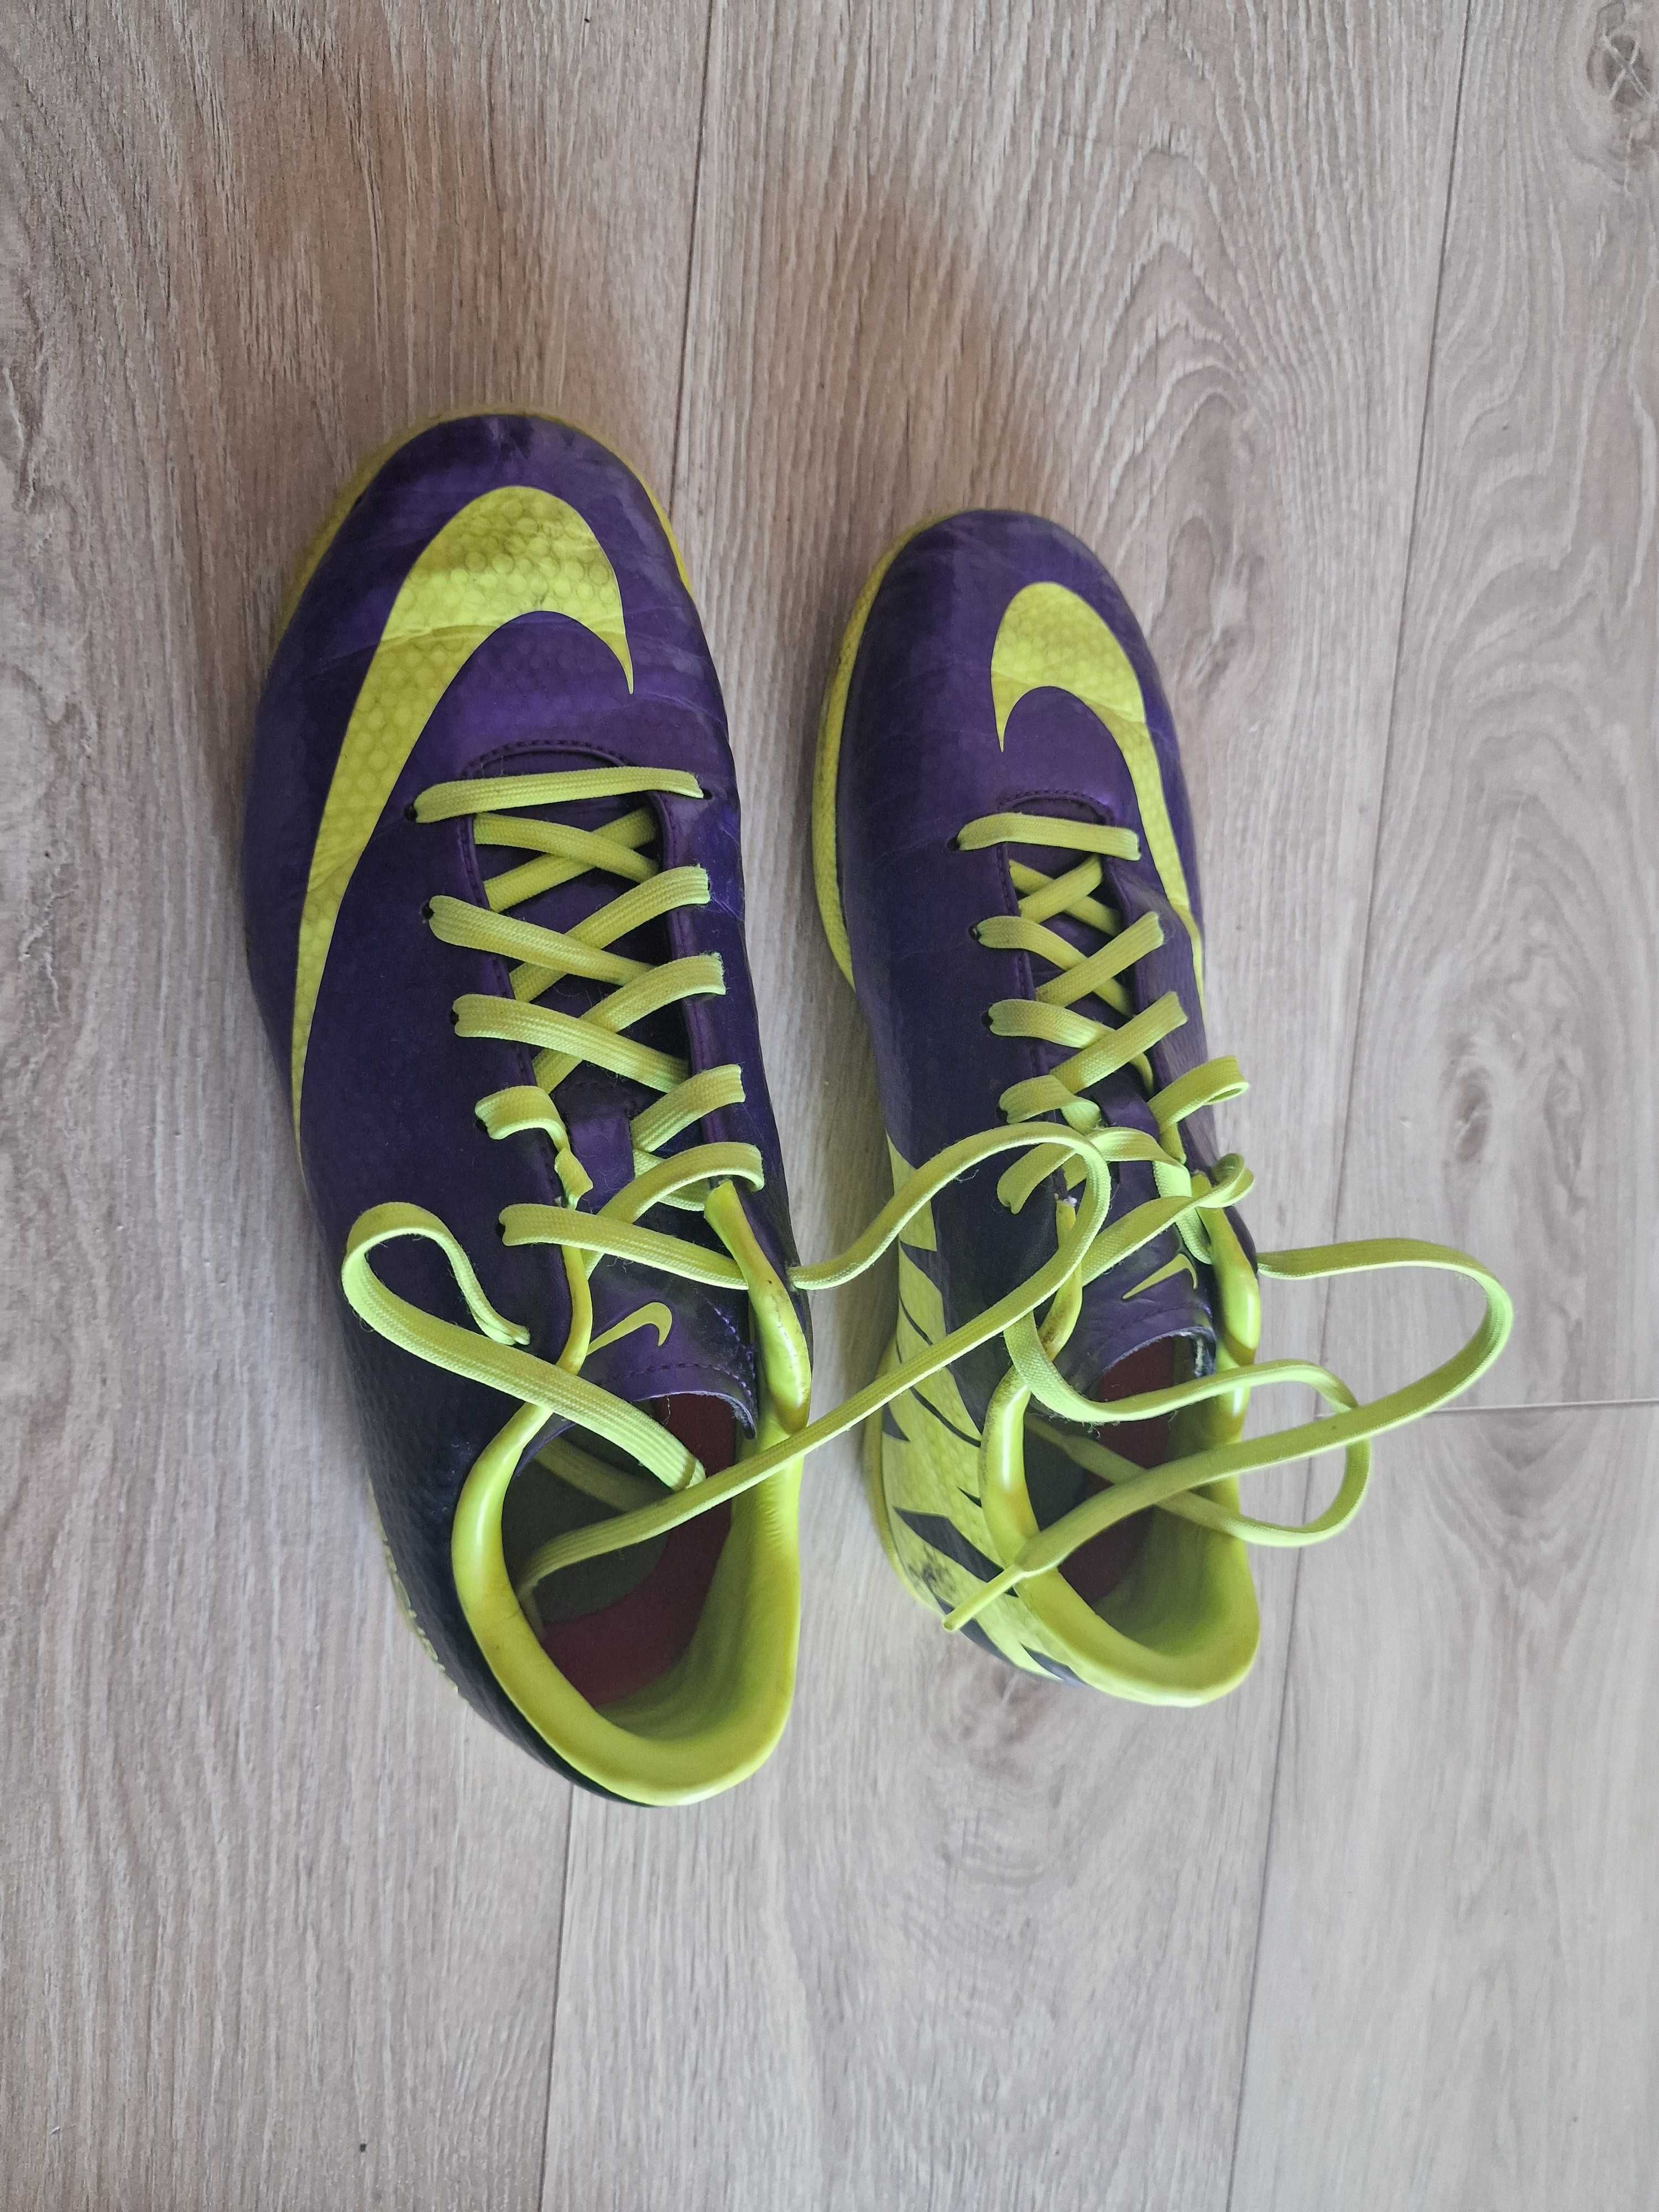 Buty piłkarskie Nike Mercurial rozm.35.5